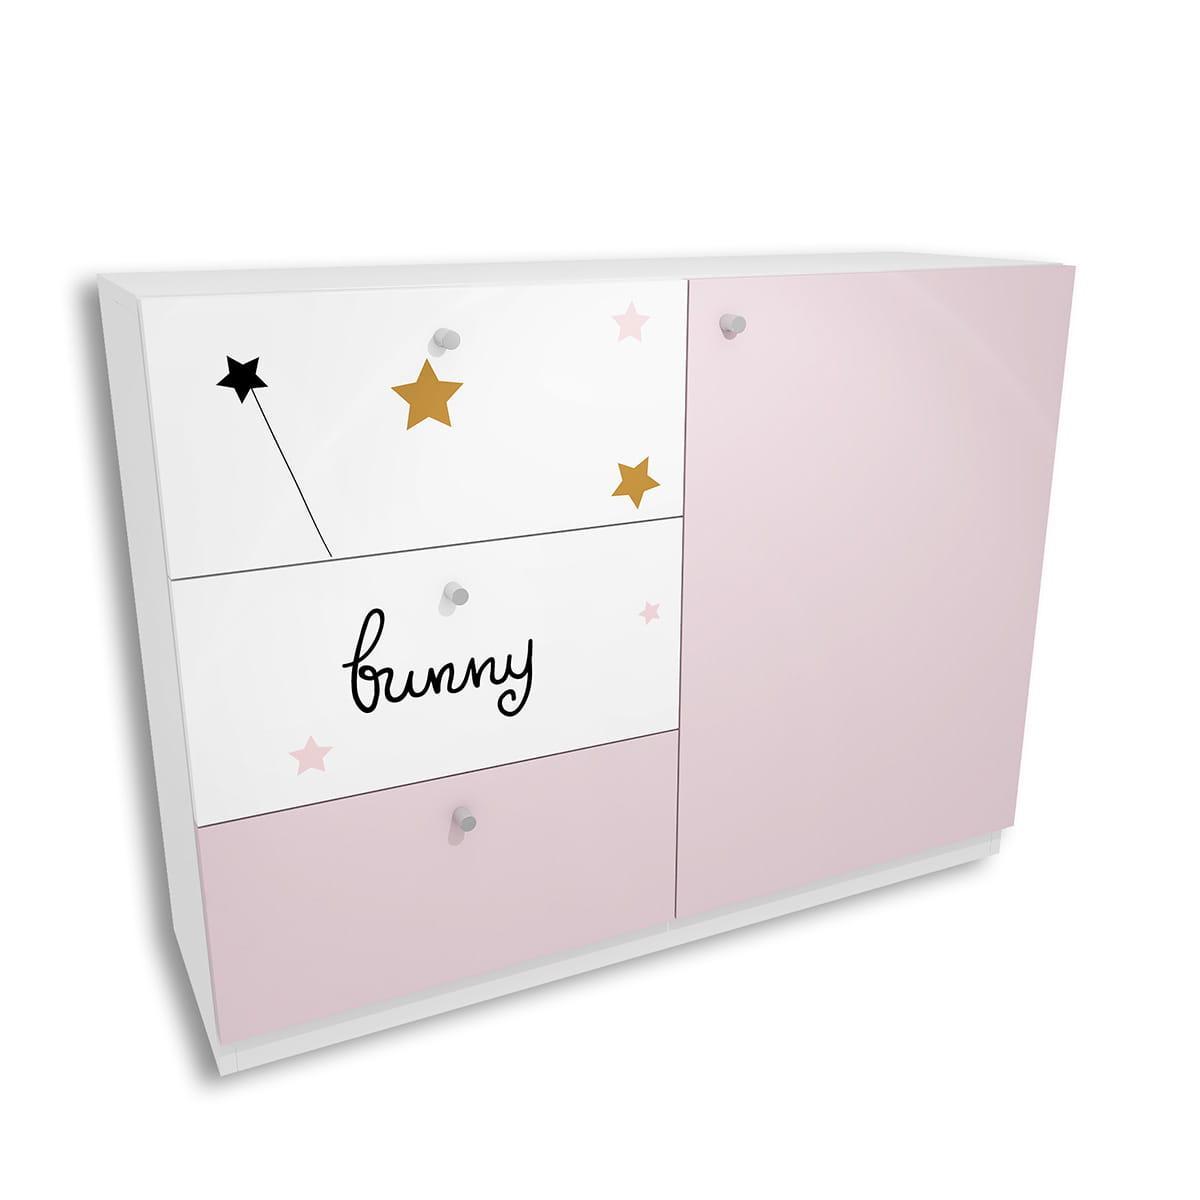 Komoda FAIRY 120x90 cm lawendowa różowa 3 szuflady dla dziecka  0 Full Screen